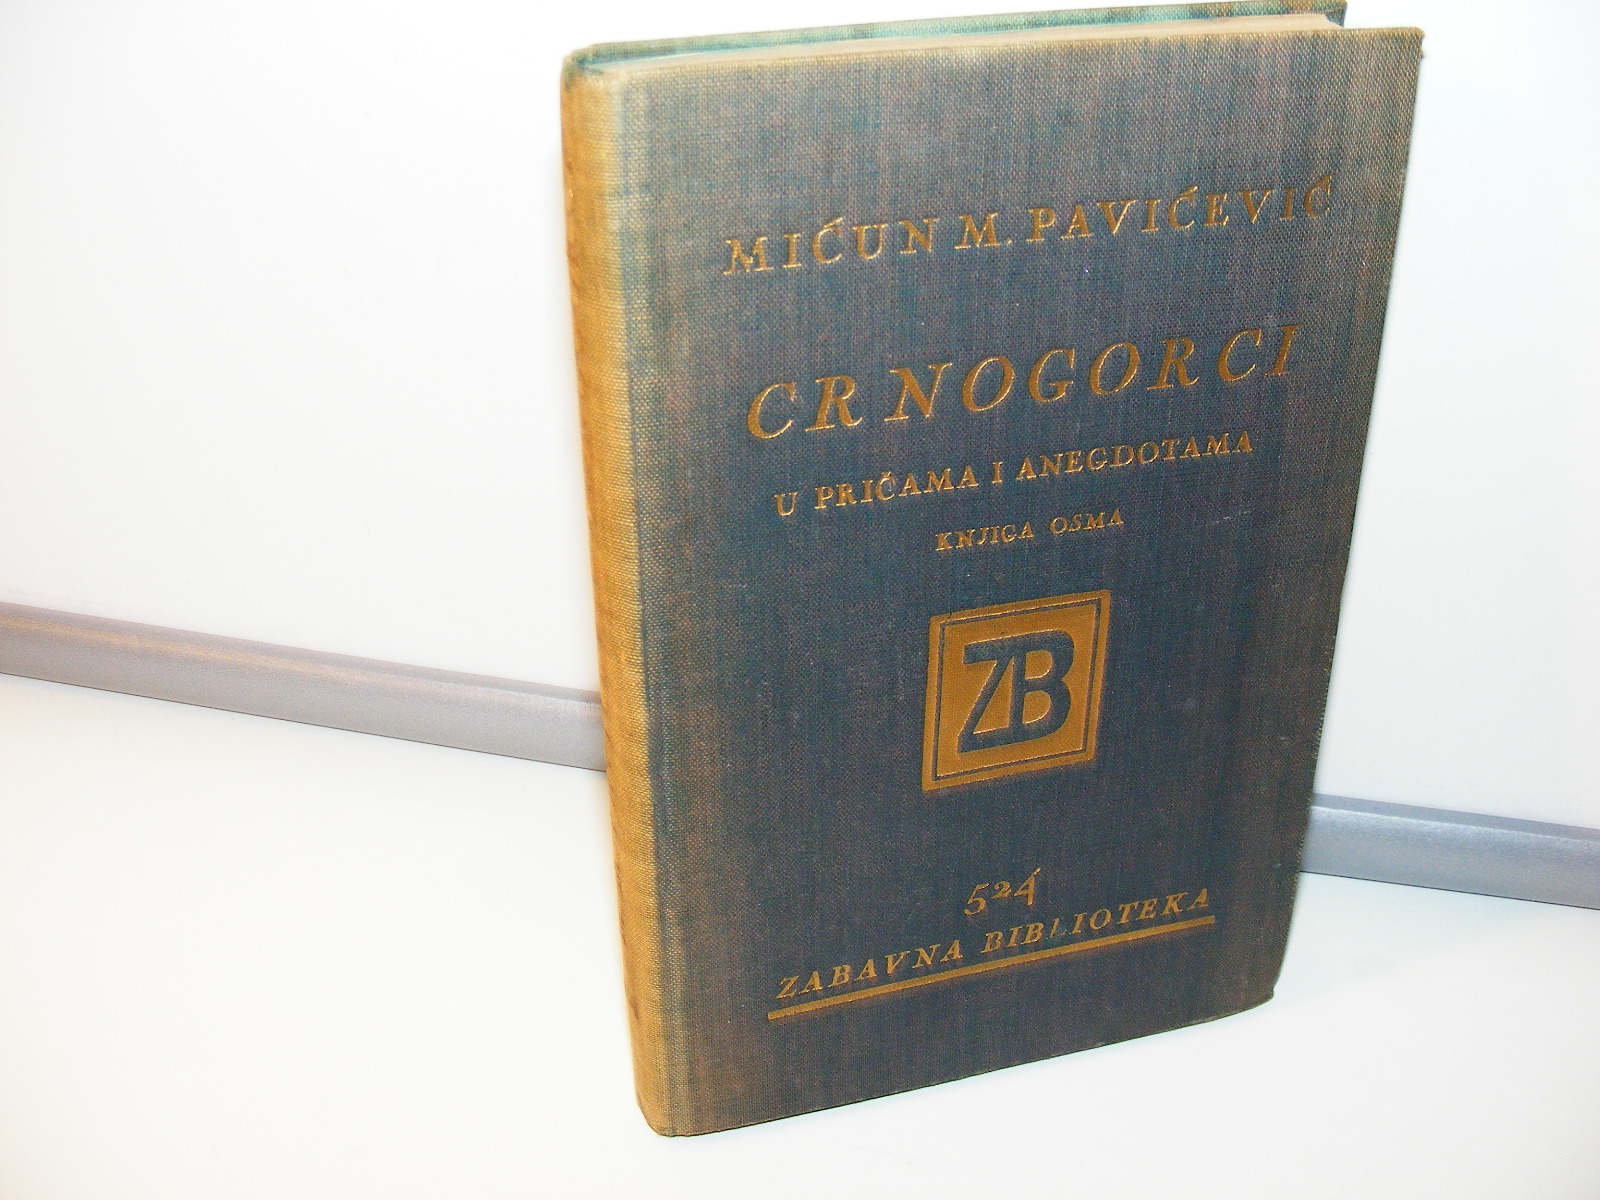 Crnogorci u pričama i anegdotama Mićun Pavićević, 1932